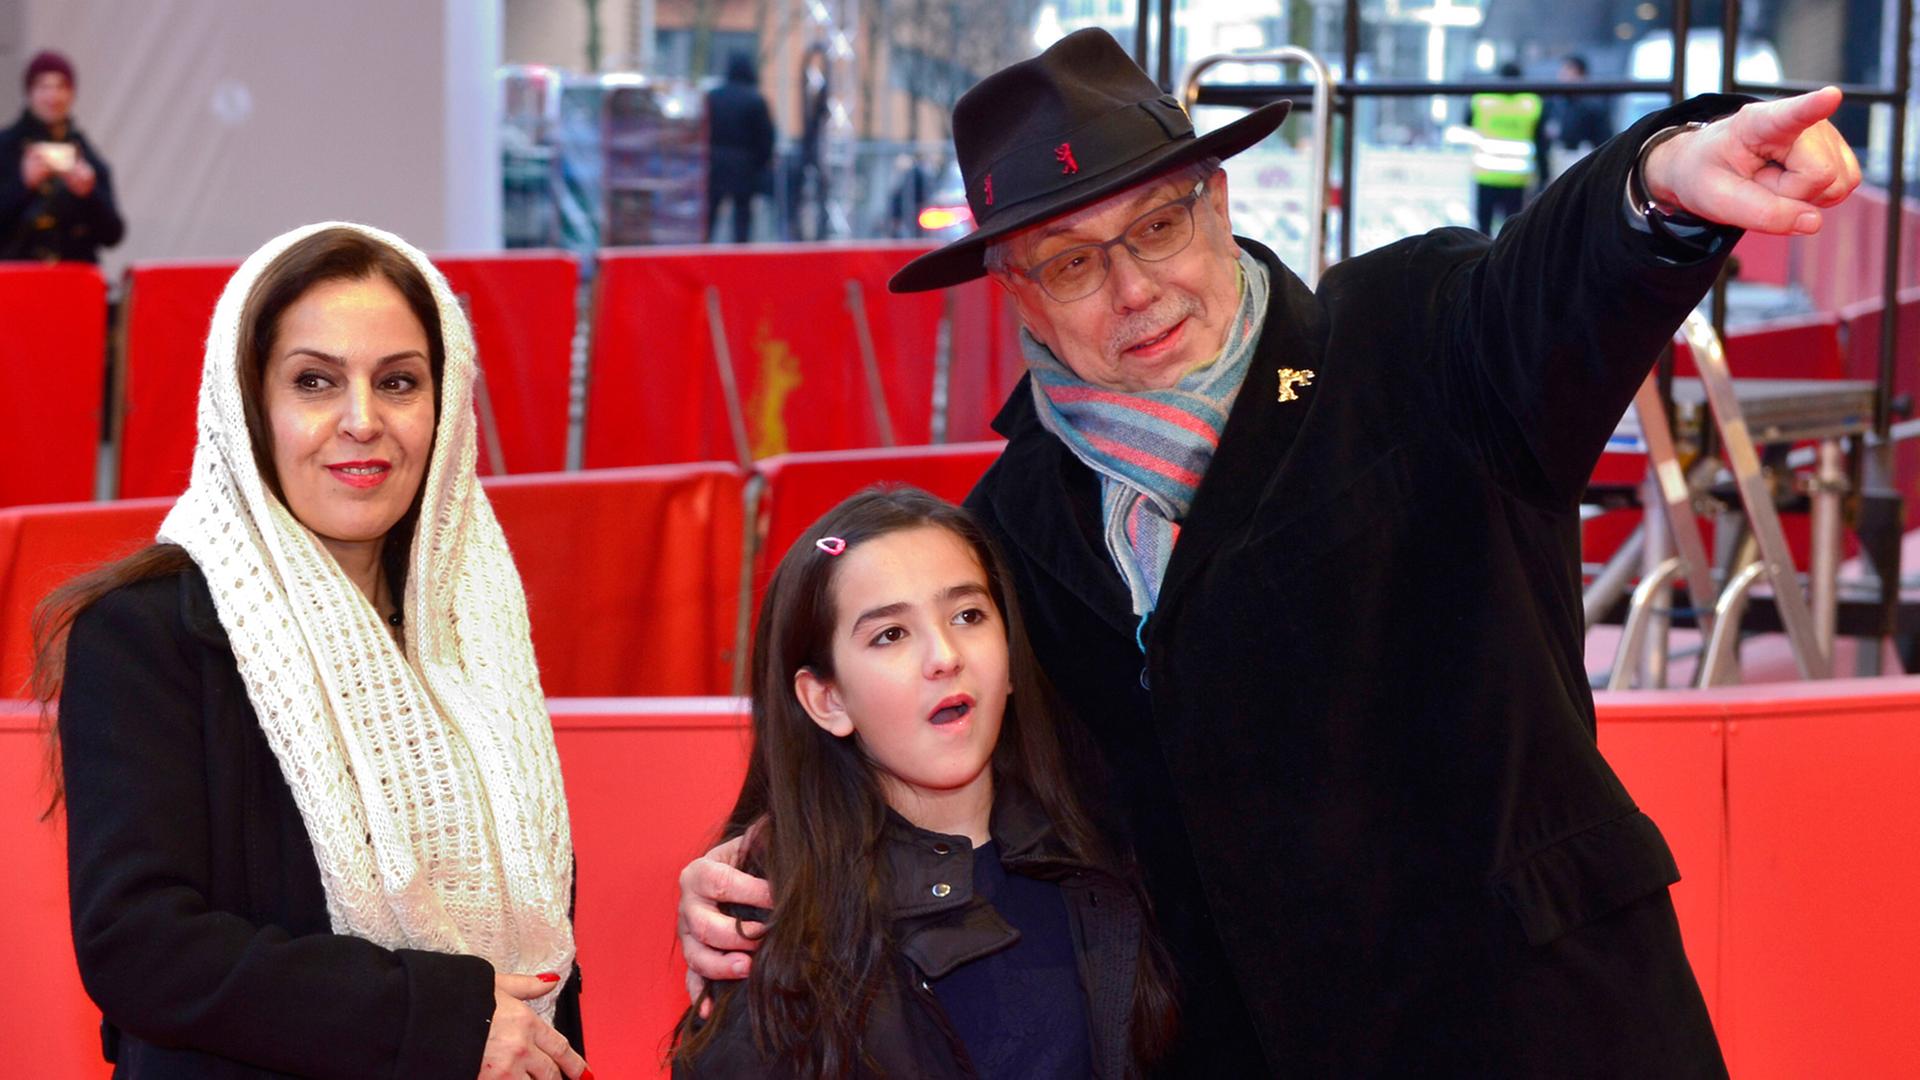 Berlinale Direktor Dieter Kosslick begrüßt die Nichte des iranischen Regisseurs Jafar Panahi und eine weitere Verwandte; Aufnahme vom 6. Februar 2015